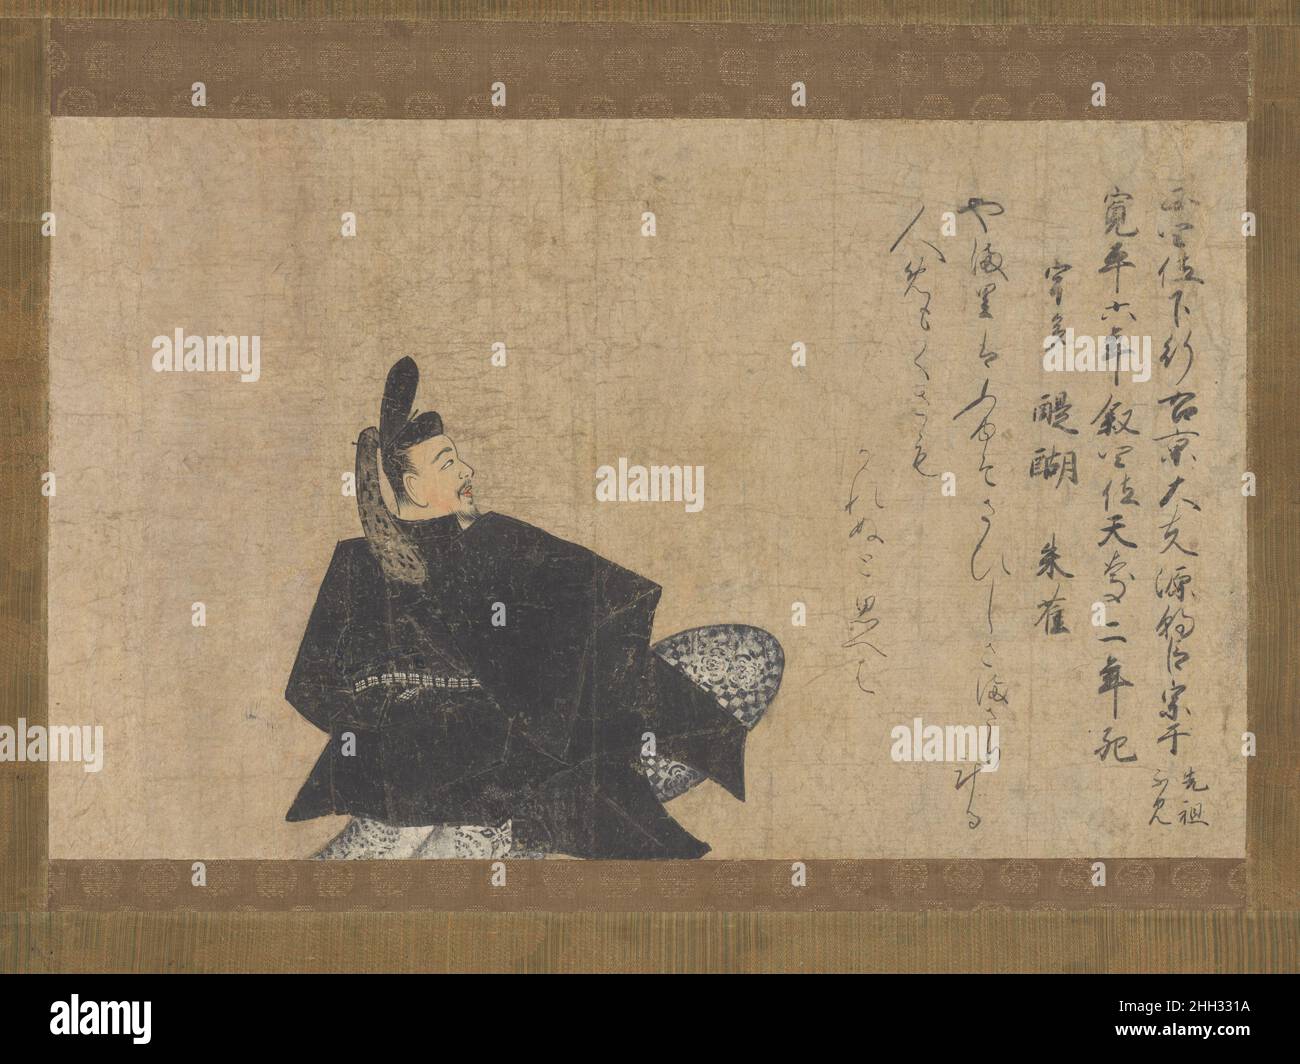 Minamoto no Muneyuki, dalla “versione Fujifusa” di trentasei Immortali poetici (Fujifusa-bon Sanj?rokkasen emaki) inizio 15th secolo non identificato Minamoto no Muneyuki (morto ca. 939), poeta e cortigiano del periodo Heian (794-1185), è contato tra i trentasei Immortali poetici, una lista di poeti celebrati ideati durante l'XI secolo. Gli artisti di corte hanno creato ritratti immaginari dei venerati poeti, accompagnati da versi rappresentativi per ciascuno. Nelle manoscarrole dipinte, i poeti erano spesso appaiati e raffigurati come se partecipassero ad una vera e propria competizione di poesia. Muneyuki w Foto Stock